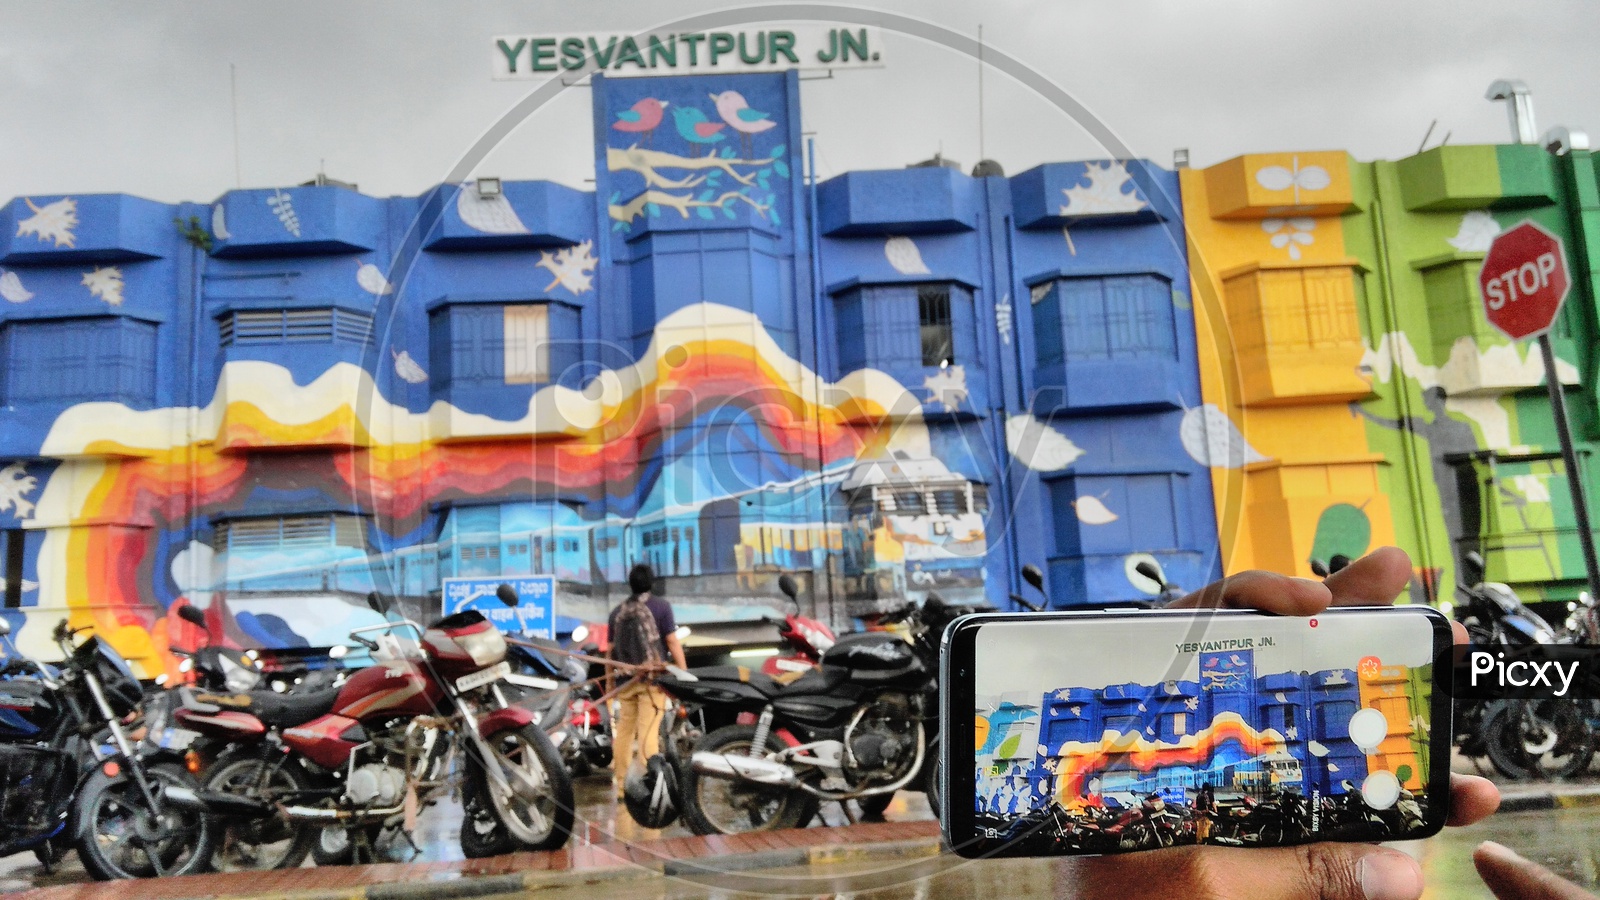 Beautiful train graffiti on yesvantpur railway station